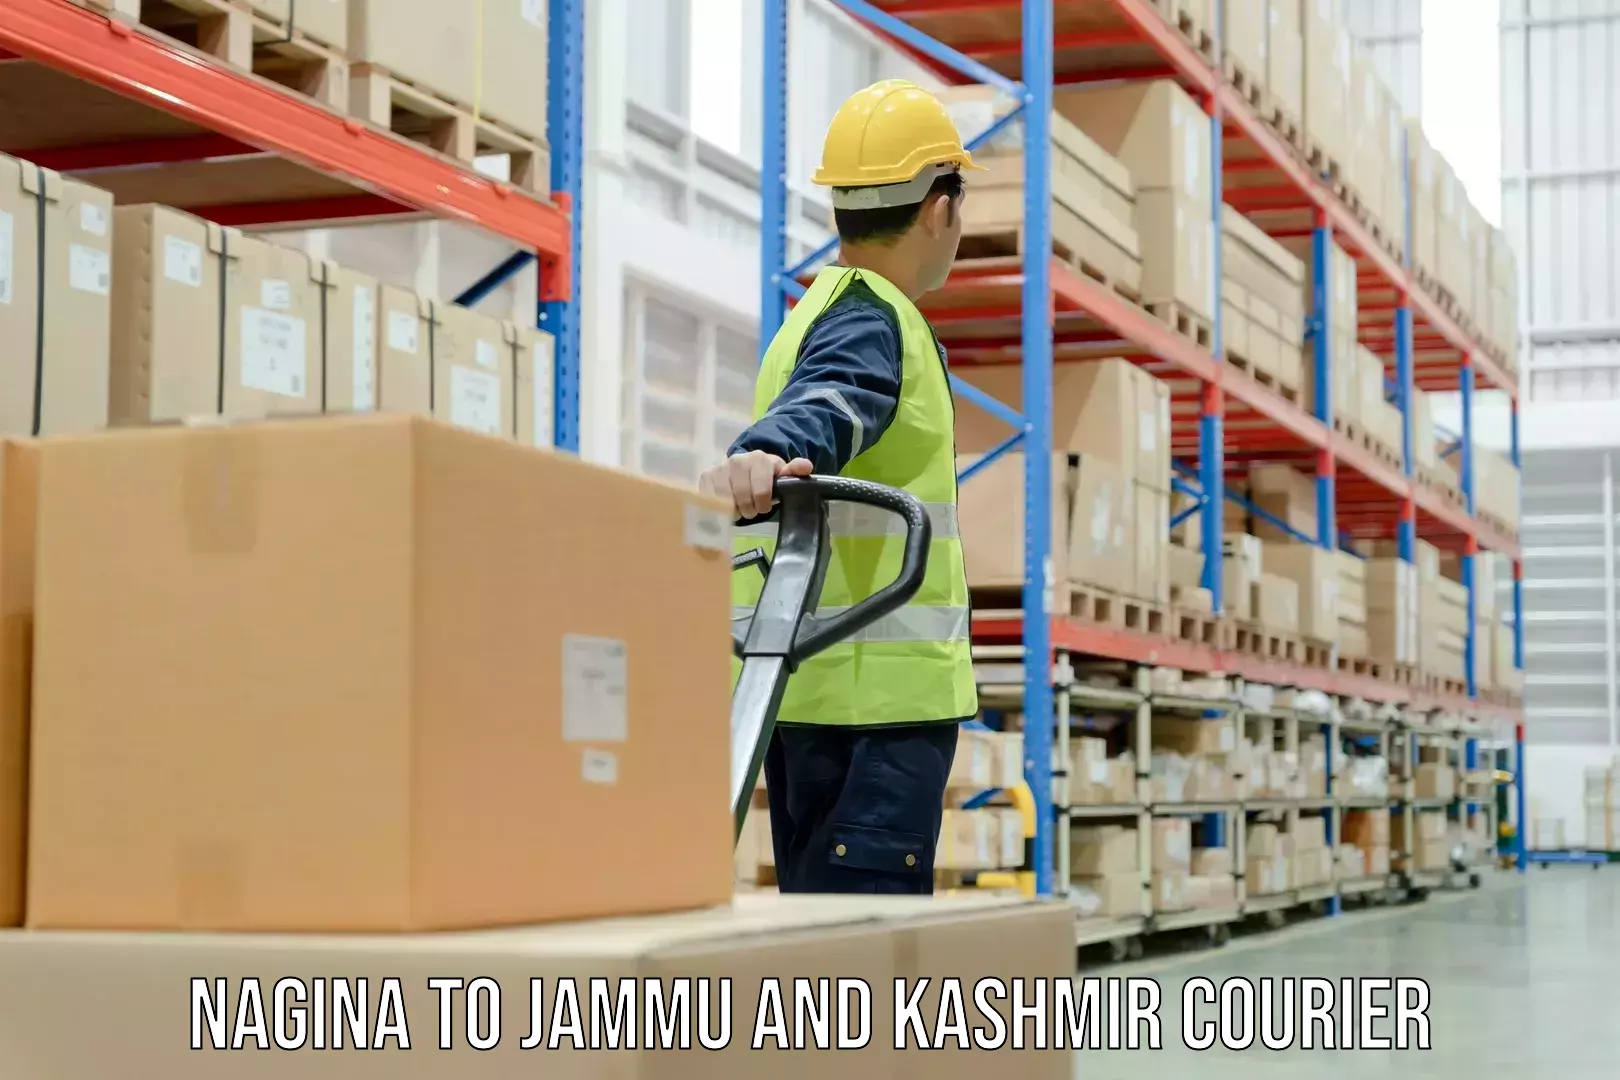 Discount courier rates Nagina to Jammu and Kashmir